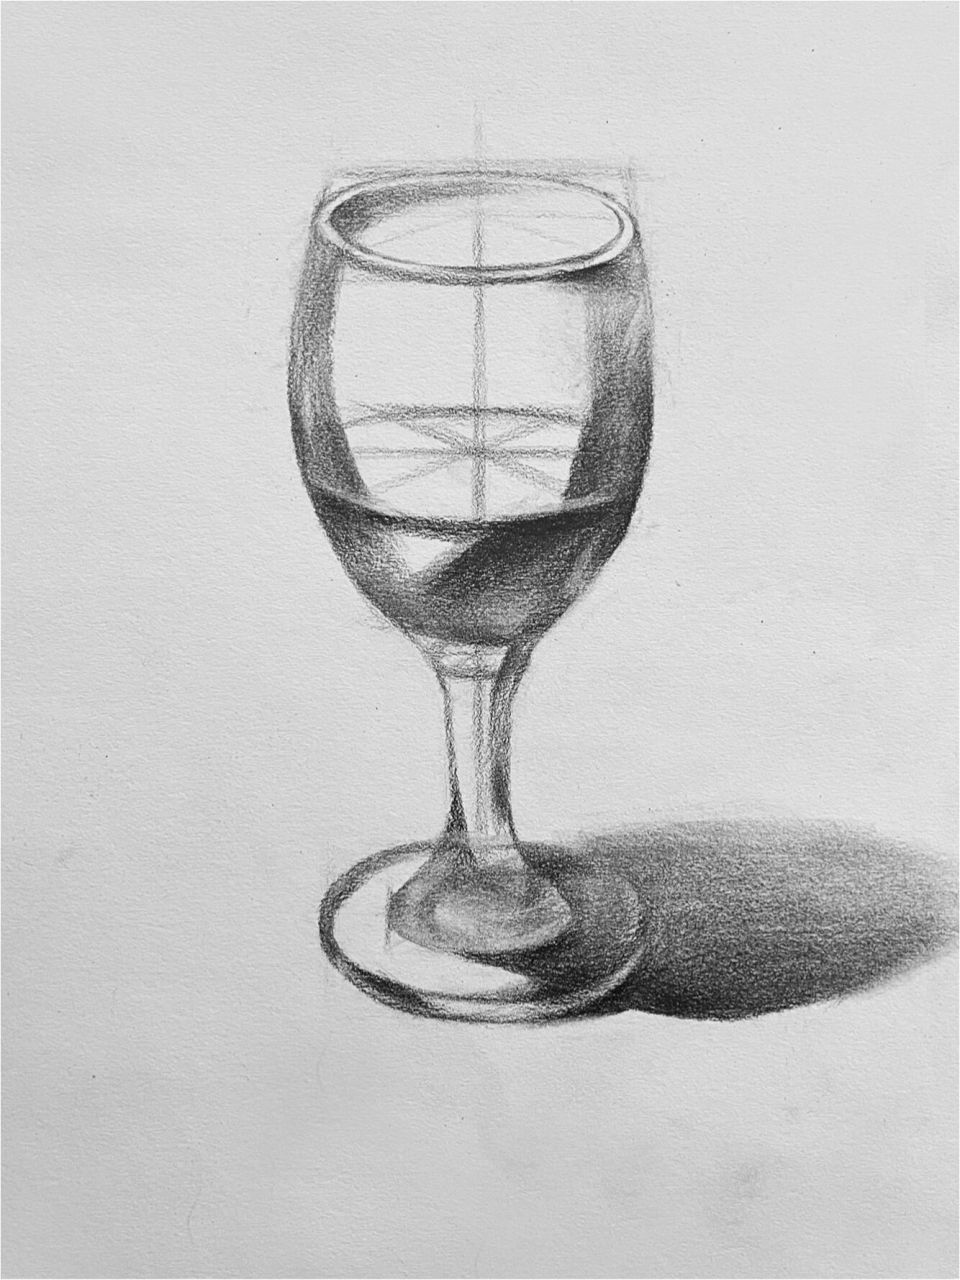 素描酒杯的画法步骤图图片